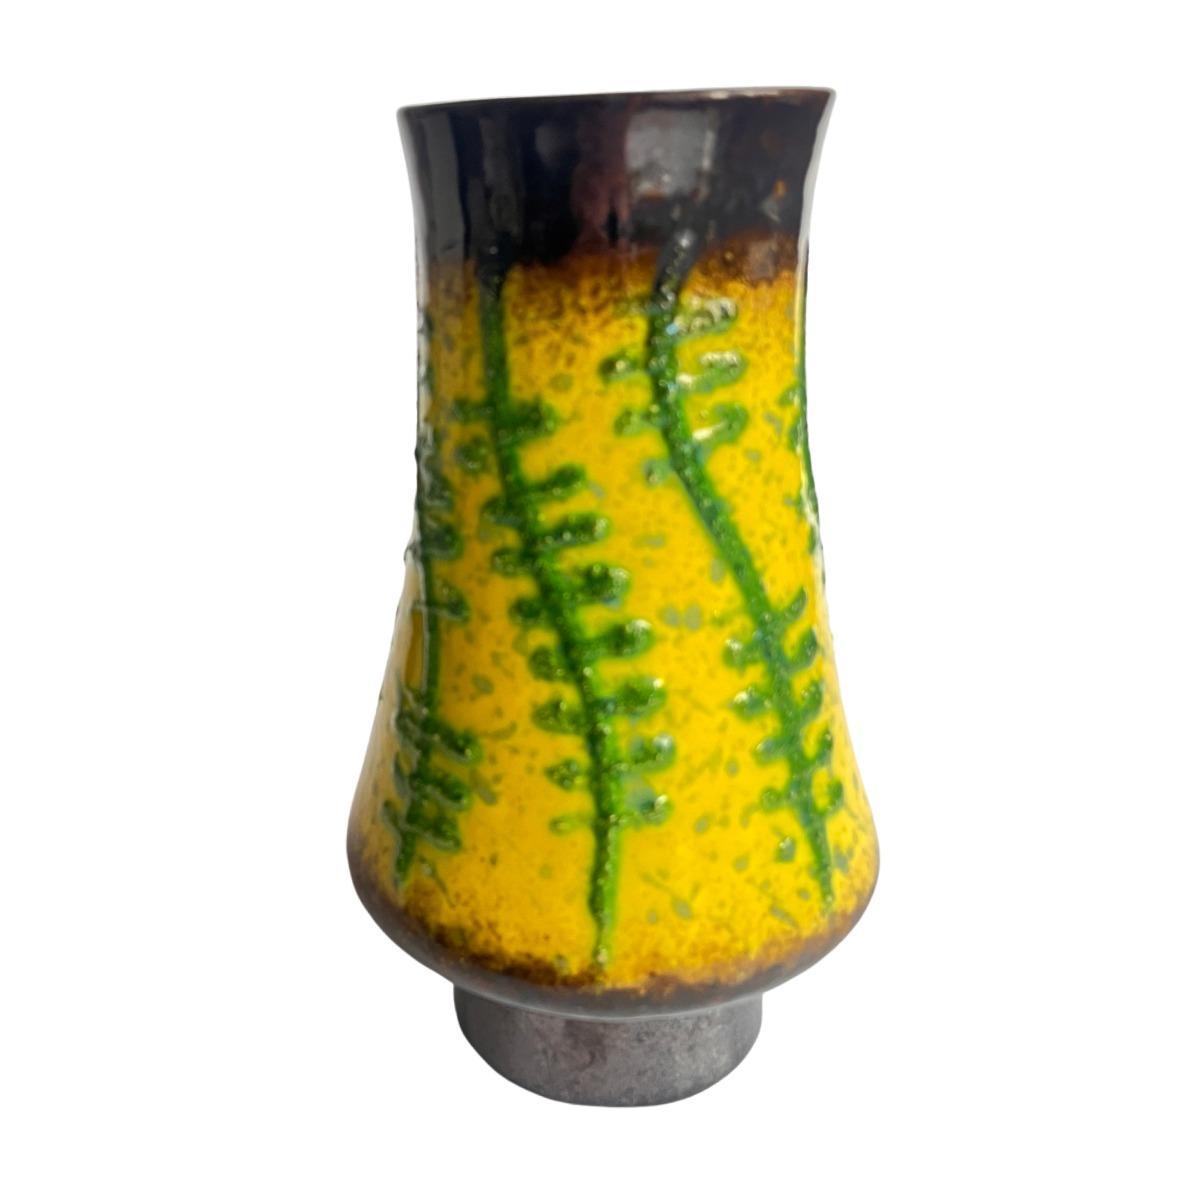 Wazon ceramiczny fat lava Strehla Keramik, Niemcy lata 60. nr. 1